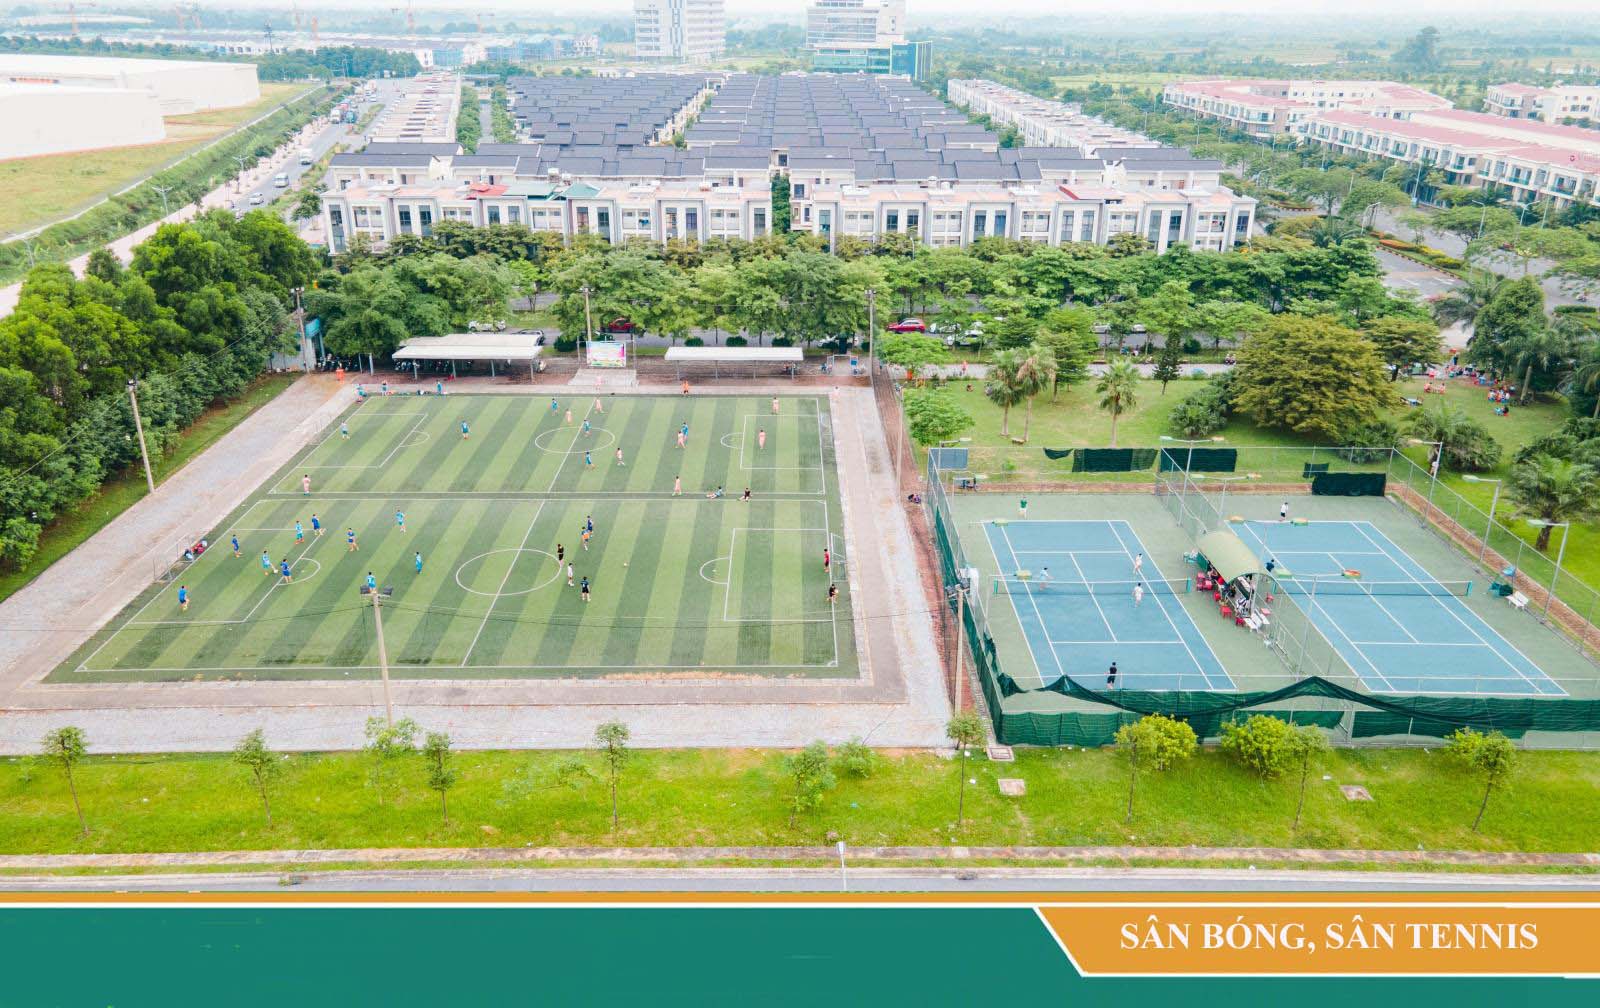 Khu thể thao hiện hữu đồi cỏ, sân bóng, sân tennis